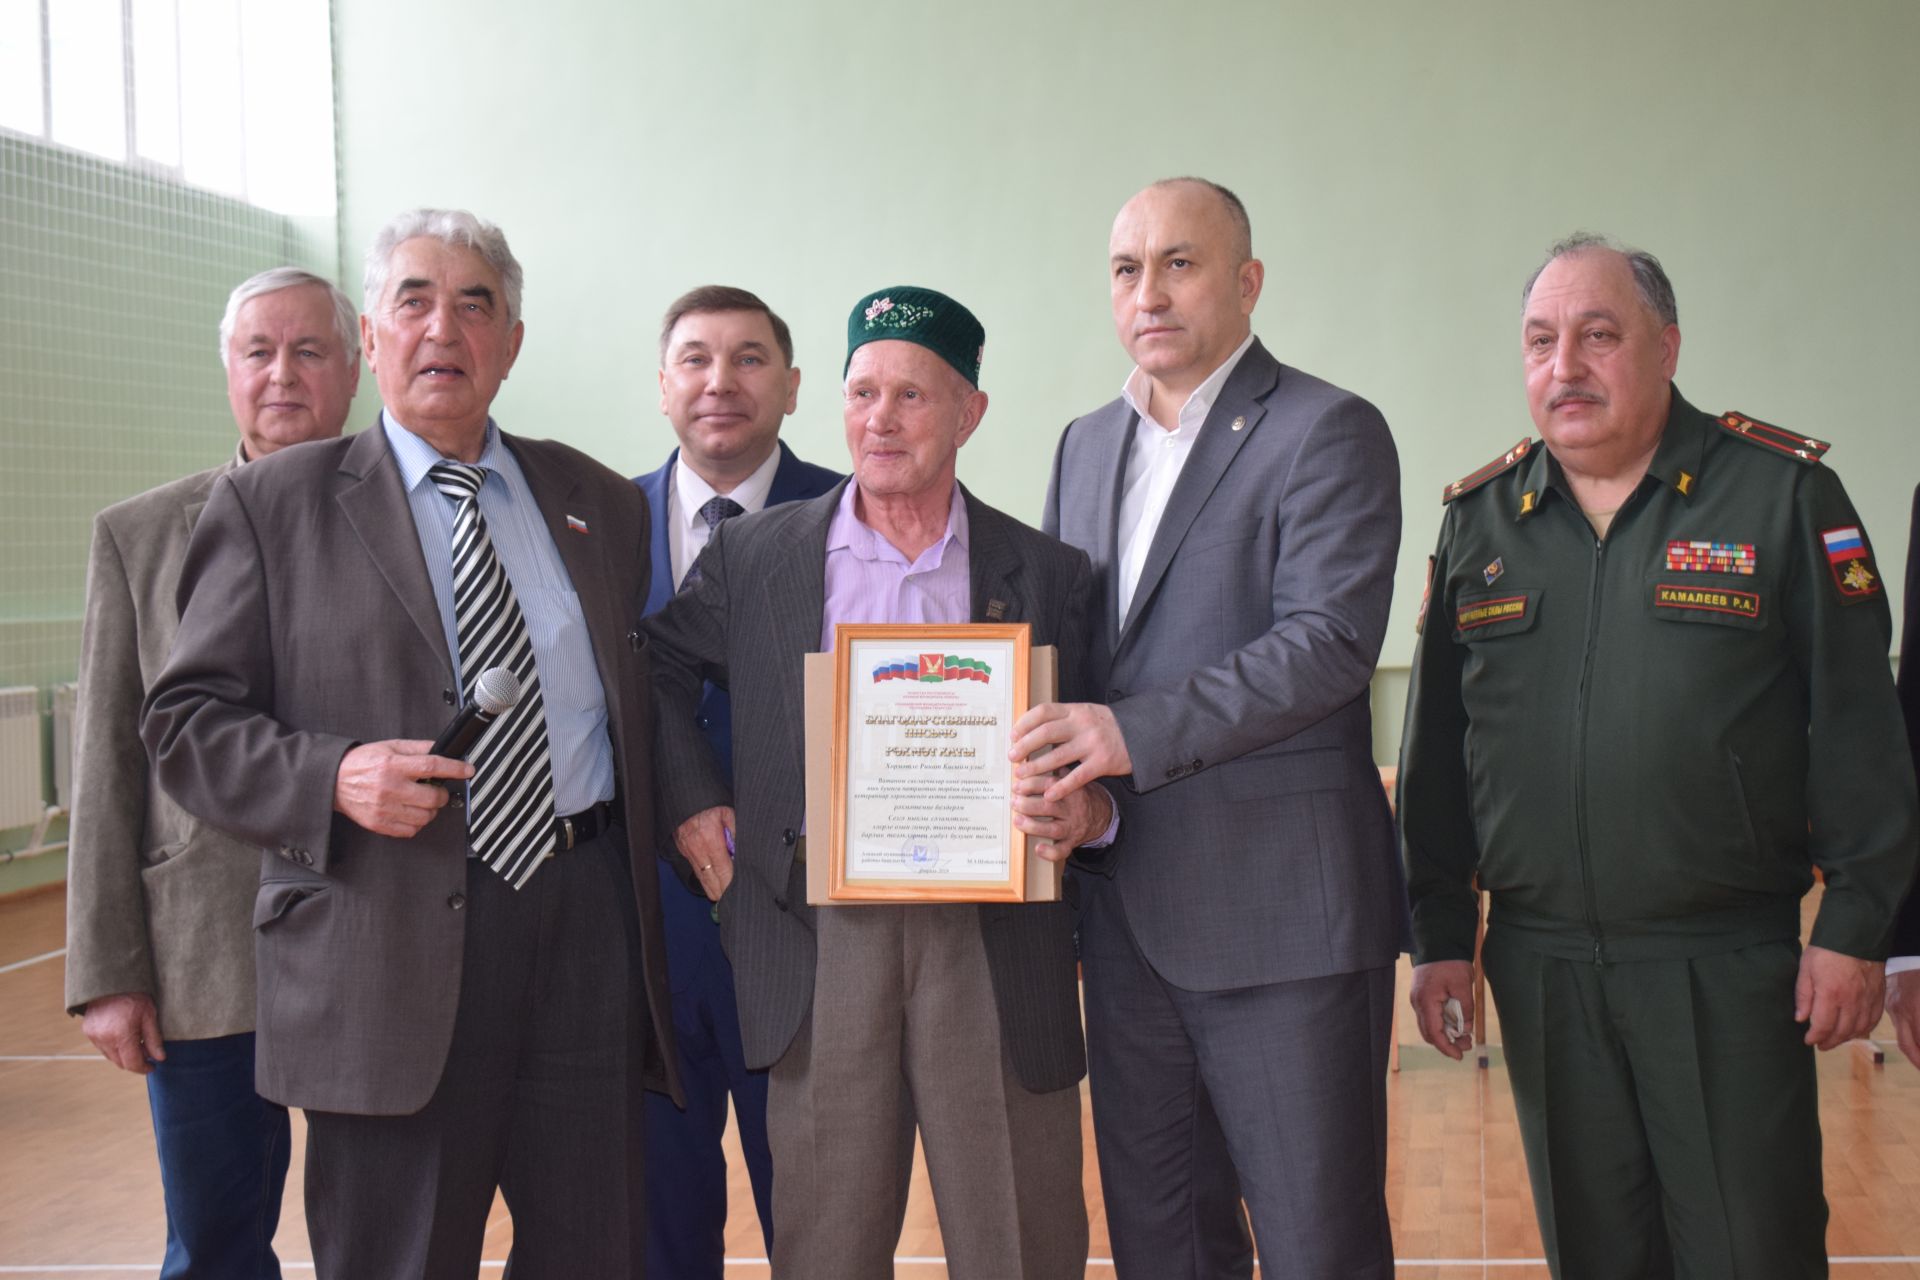 Азнакаевские ветераны испытали силы в турнире «Ворошиловский стрелок»